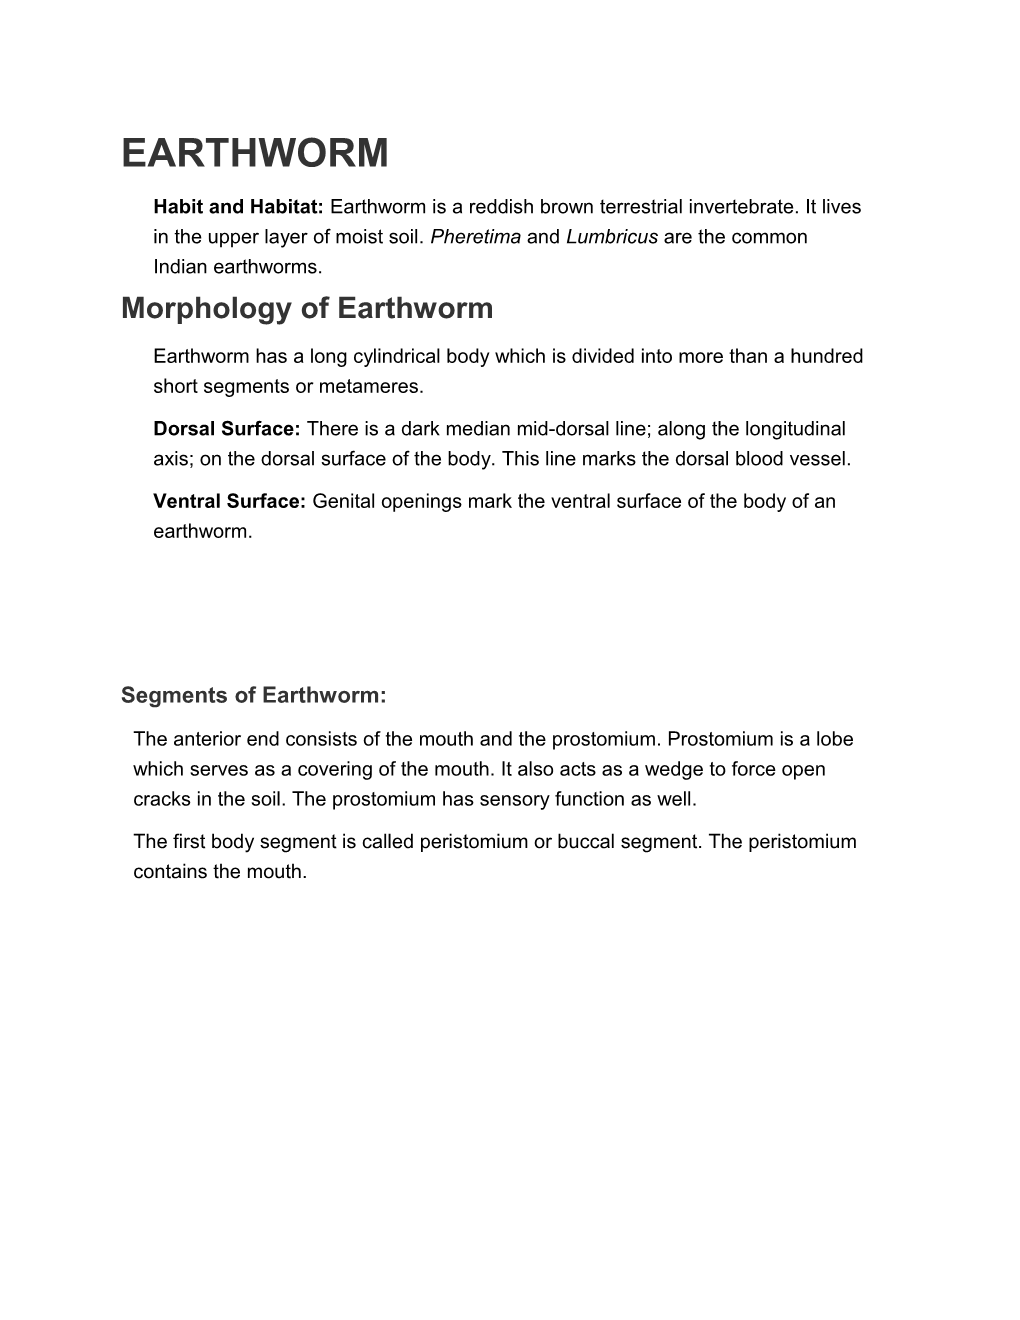 Morphology of Earthworm